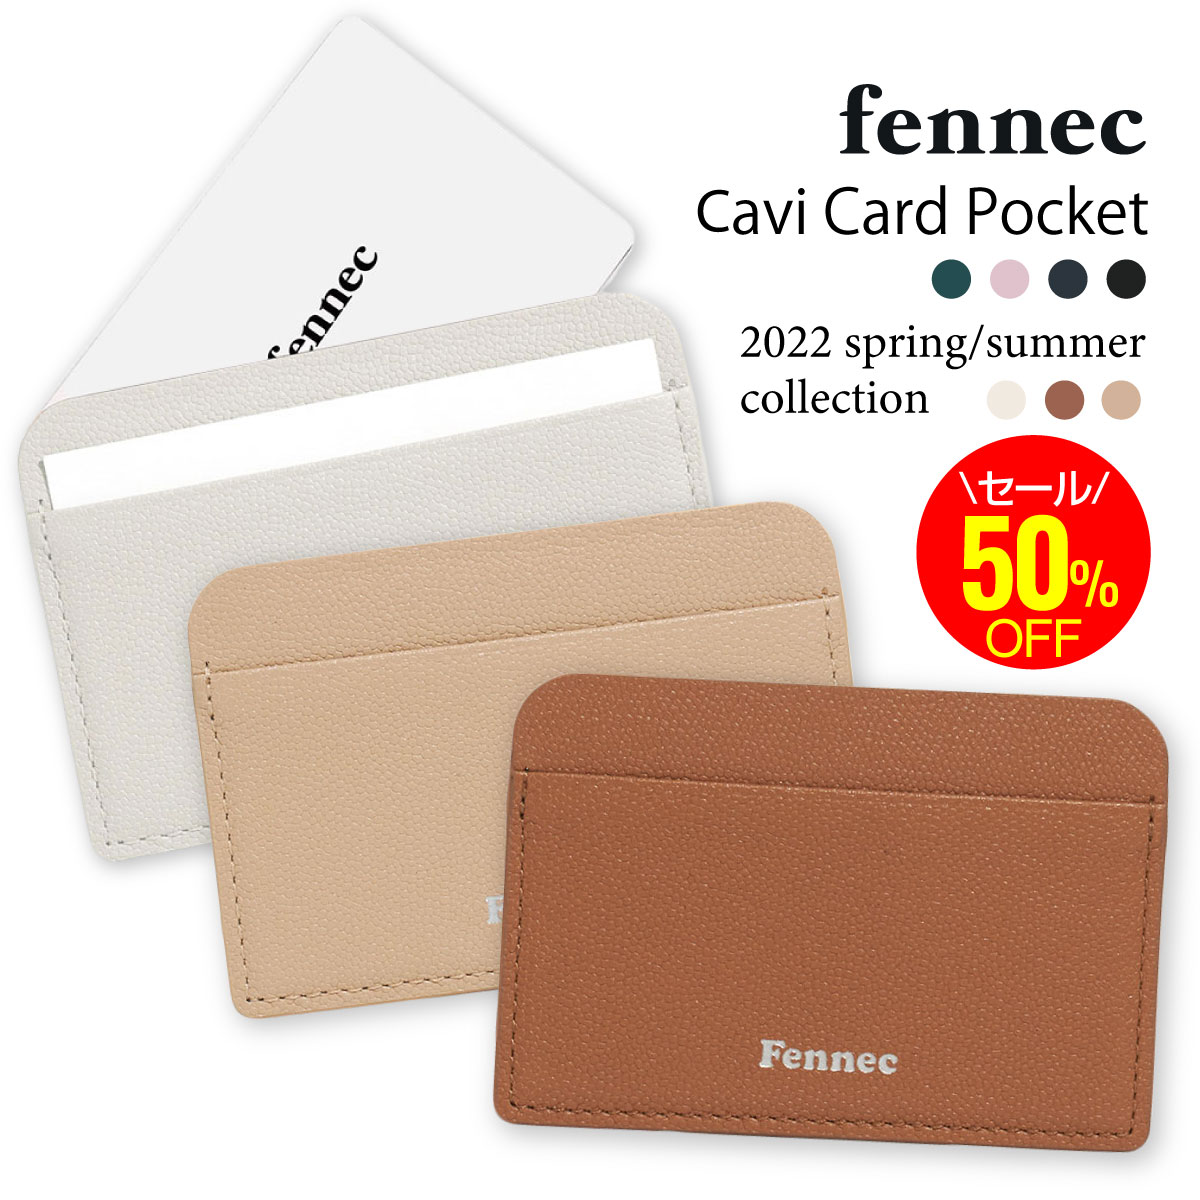 ＼セール！／Fennec Cavi Card Pocket フェネック レディース カードケース レザー ミニ財布 韓国 韓国ファッション 旅行 コンパクト財布 女子 誕生日 クリスマス プレゼント ギフト 